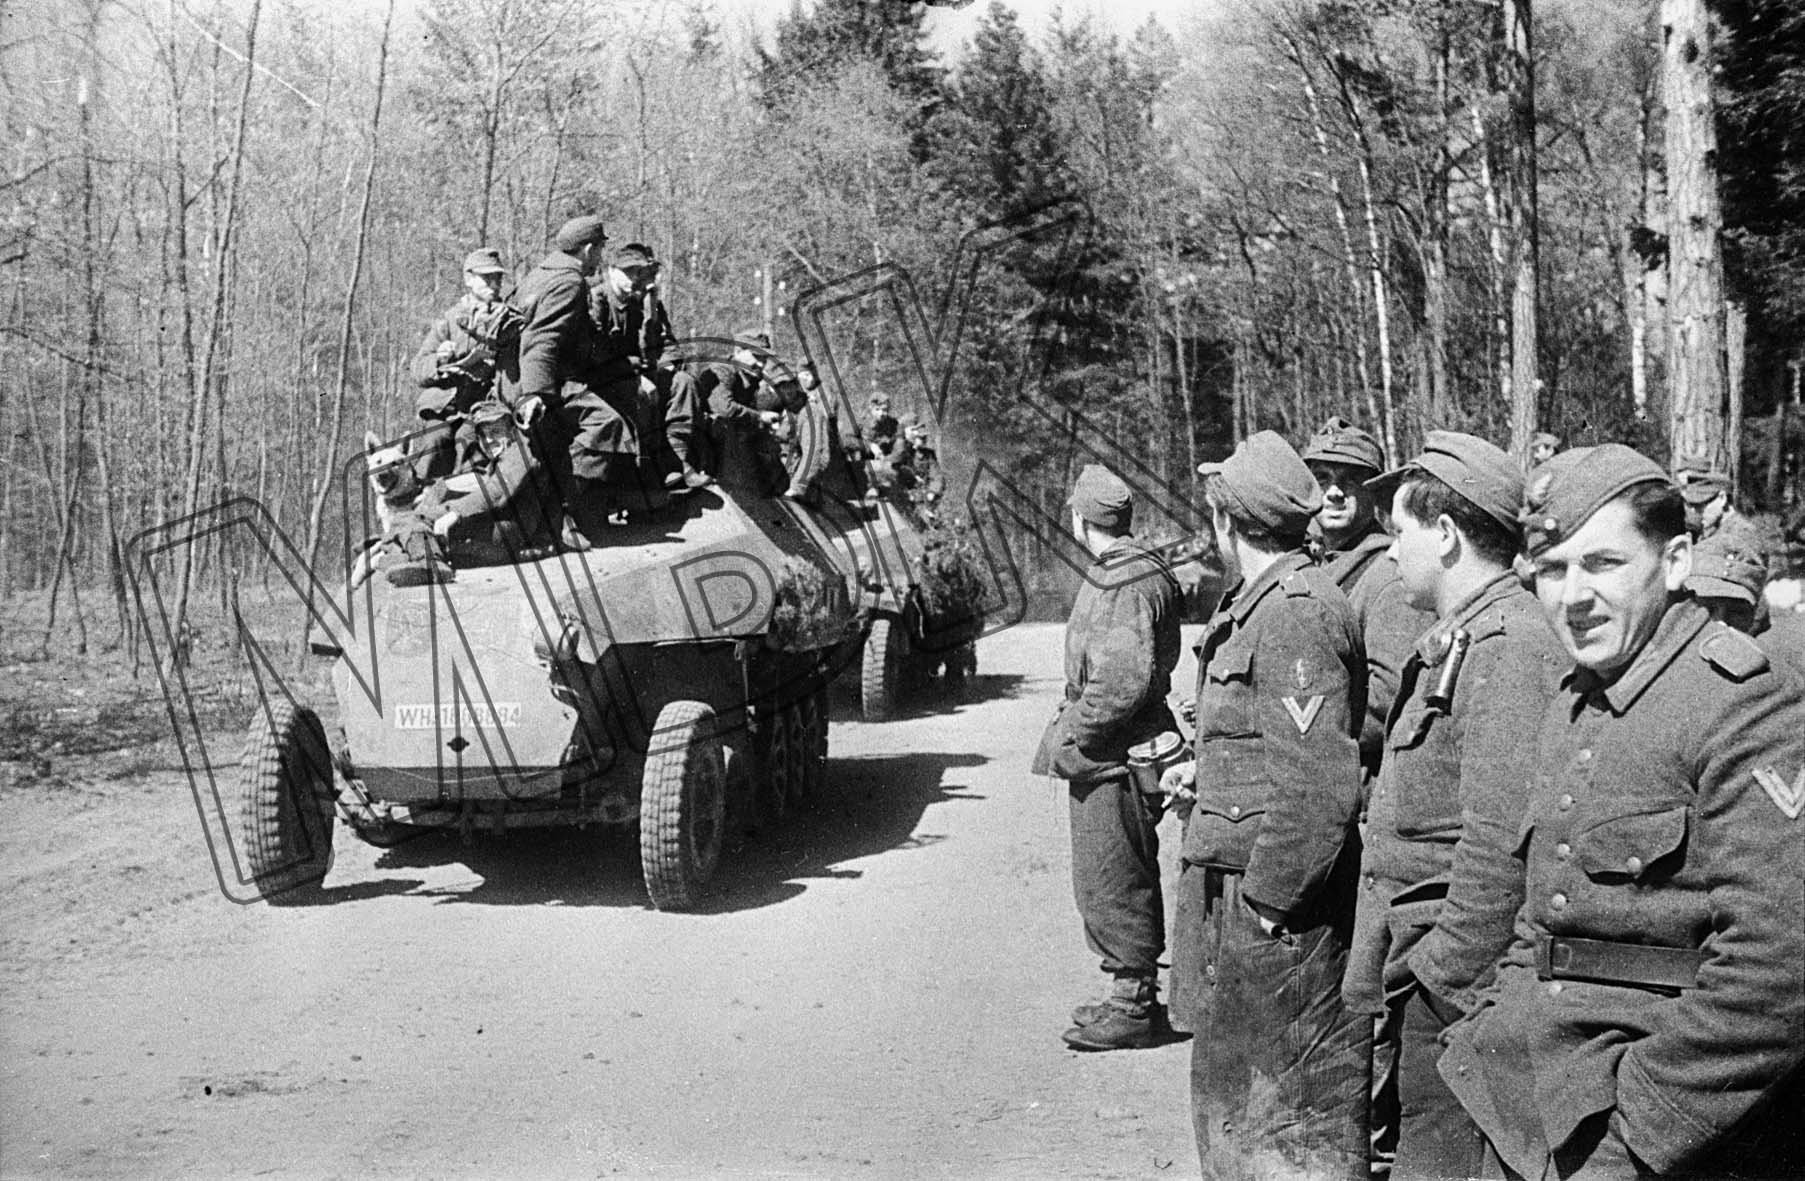 Fotografie: Deutsche Panzerfahrzeuge samt Mannschaften nach der Kapitulation, Ostpreußen, 9. Mai 1945 (Museum Berlin-Karlshorst RR-P)